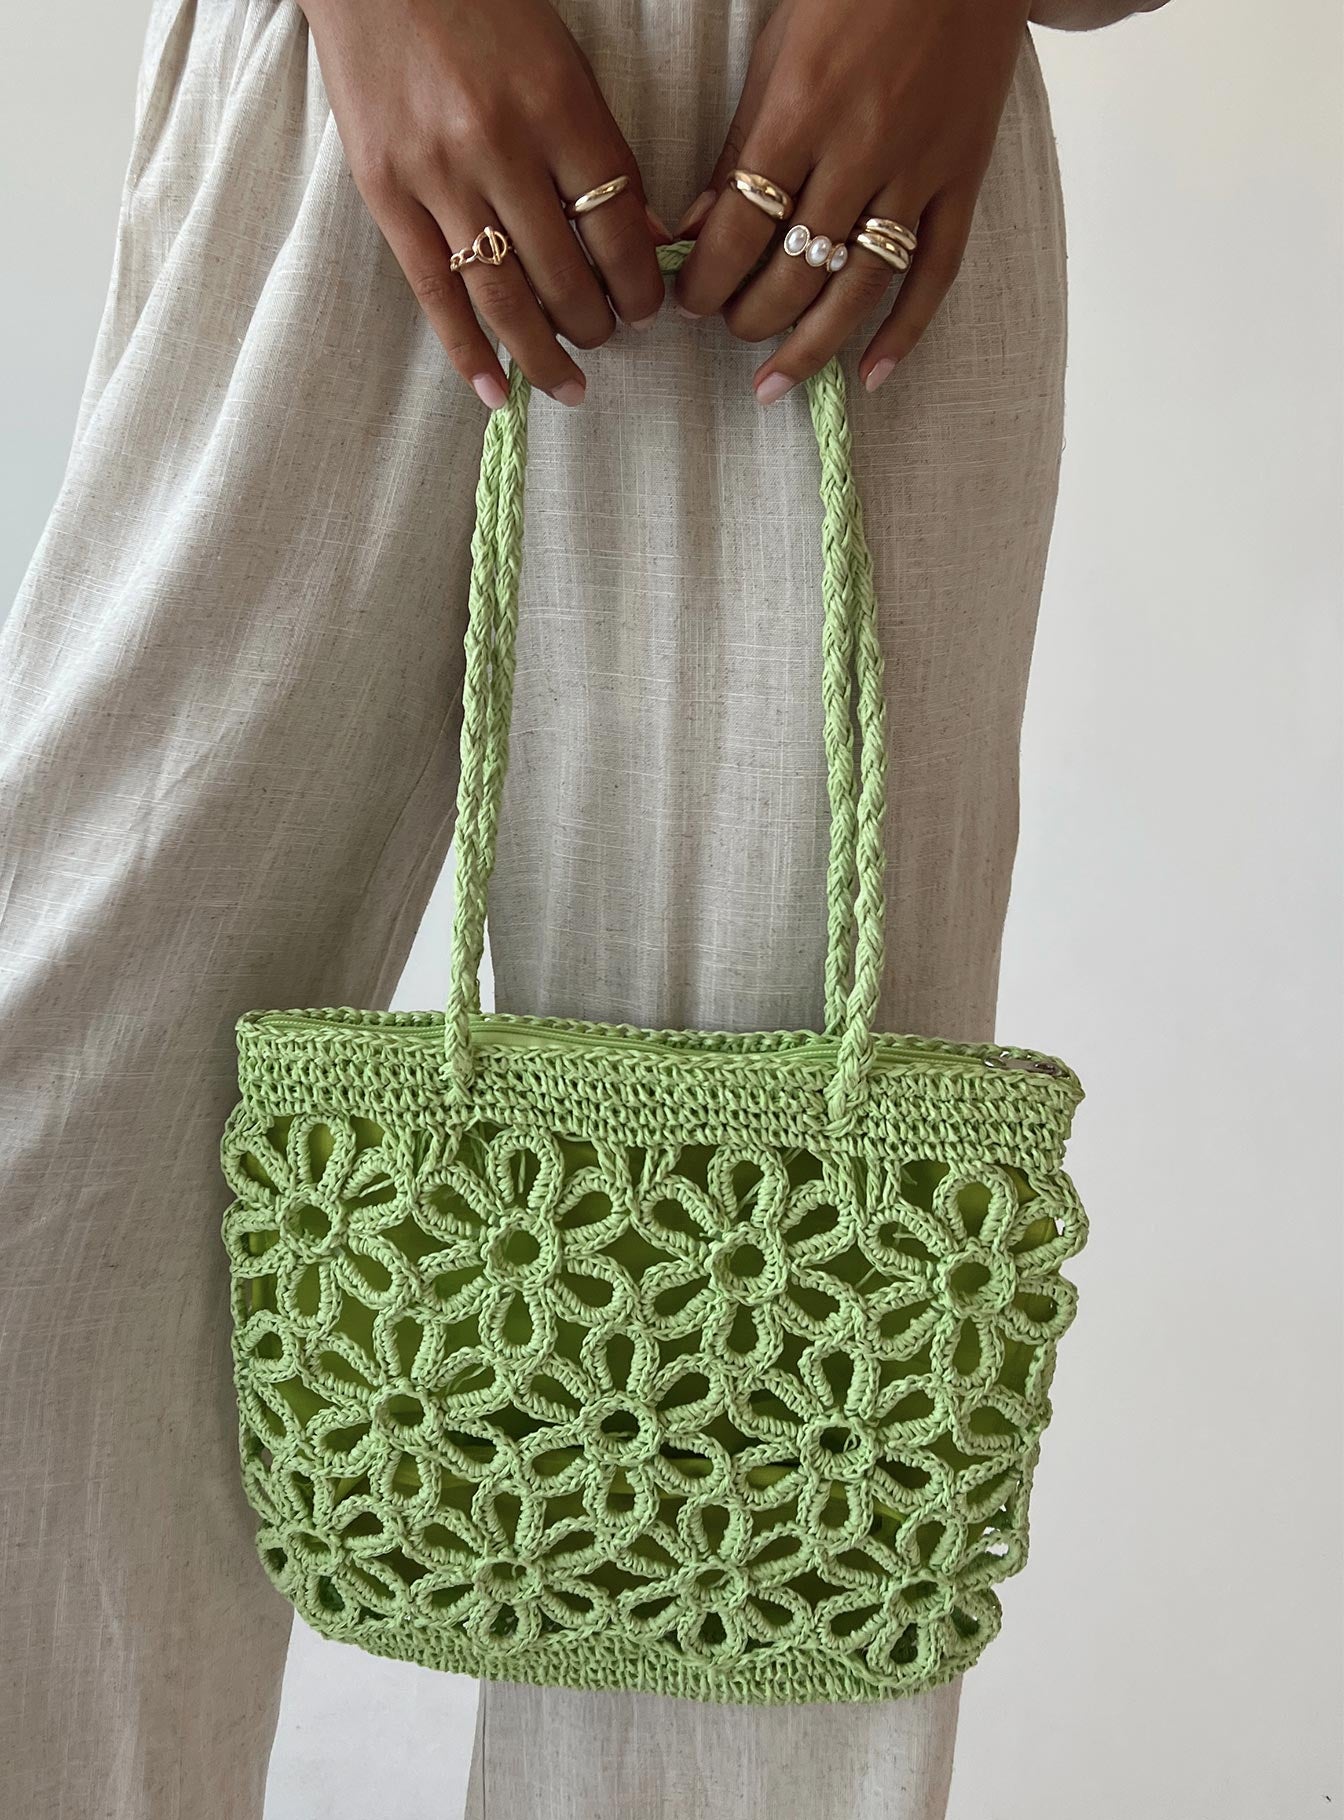 Buy Crochet Daisy Flower Bags,amigurumi Flower Bags,crochet Bag,crochet  Shoulder Bag,crochet Tote Bag,summer Bag,tote Flower Bag,gift for Girl.  Online in India - Etsy